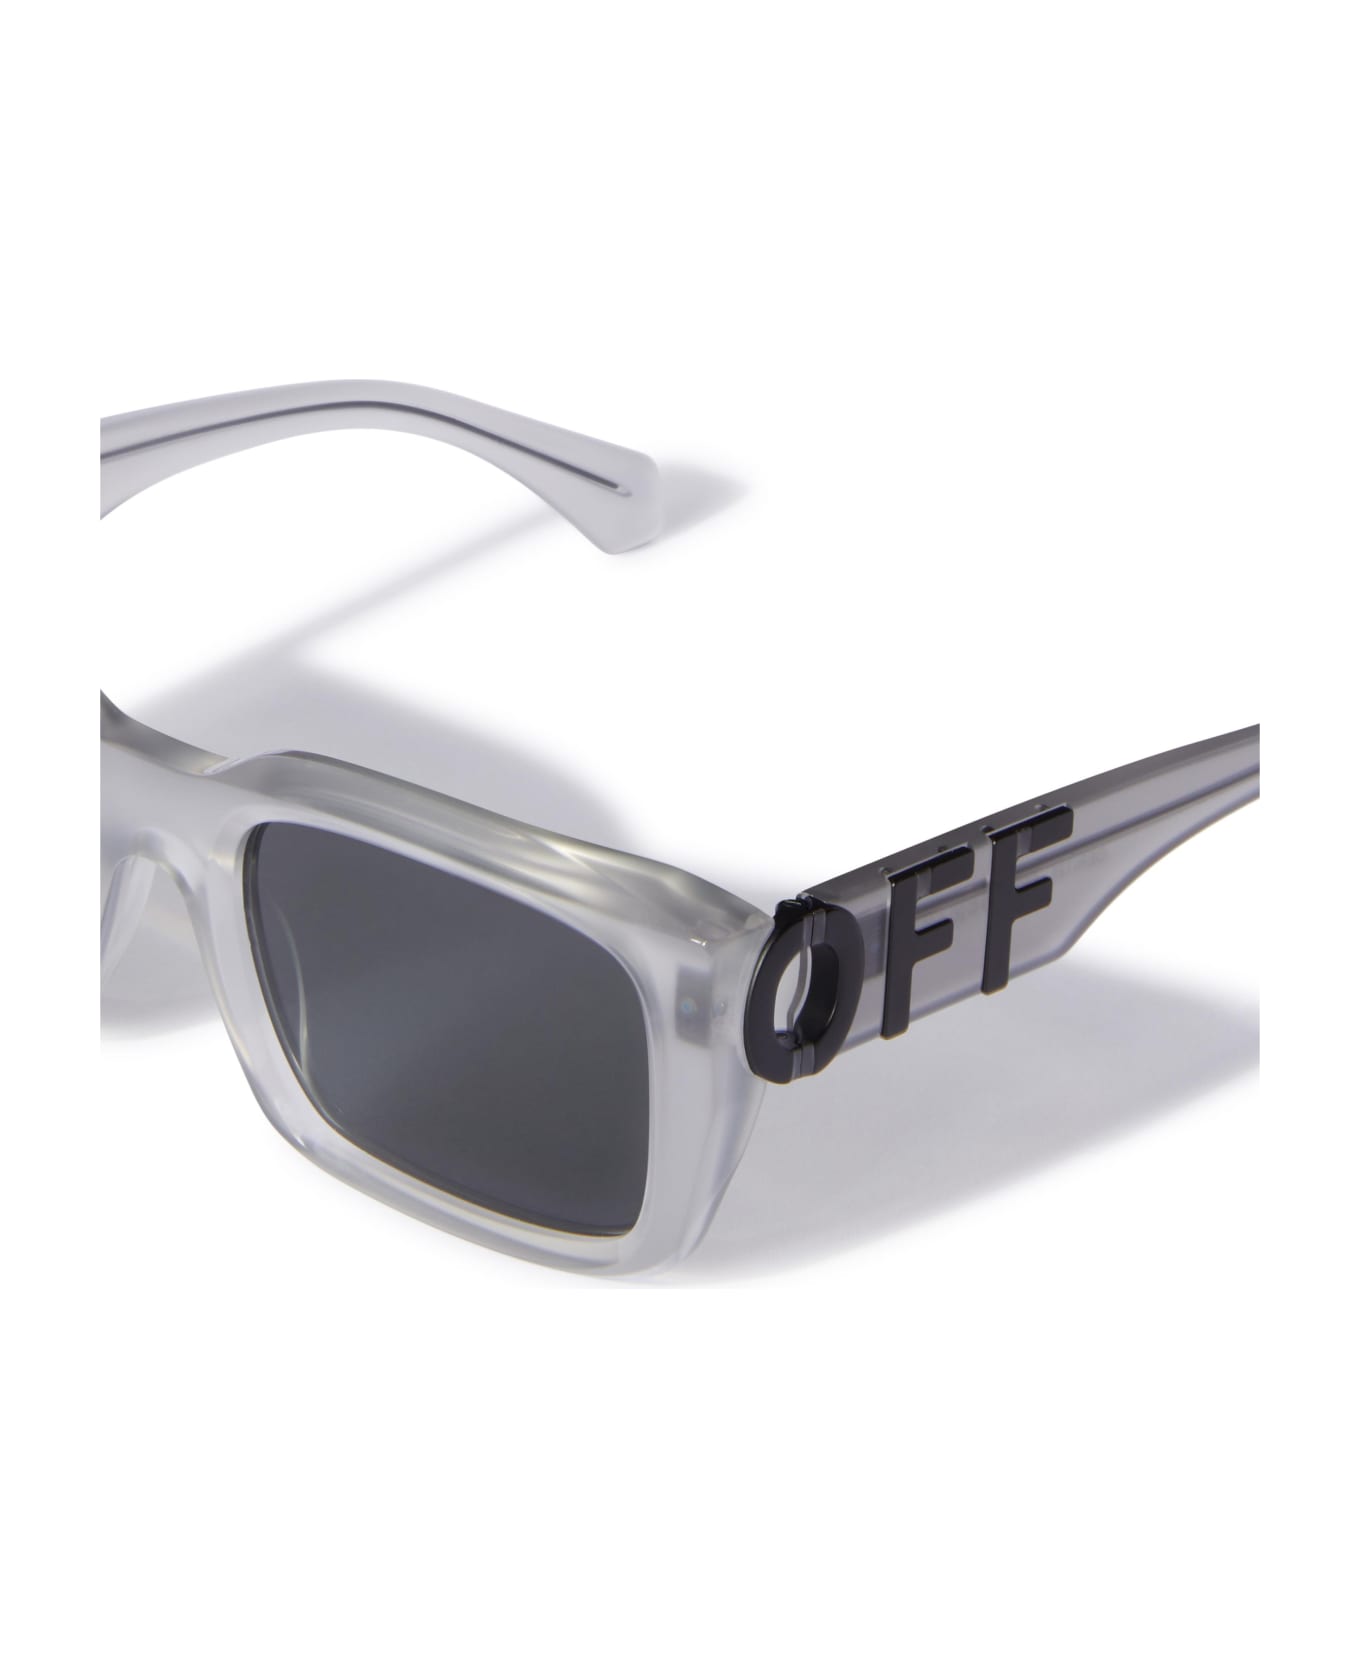 Off-White Sunglasses - Grigio/Grigio